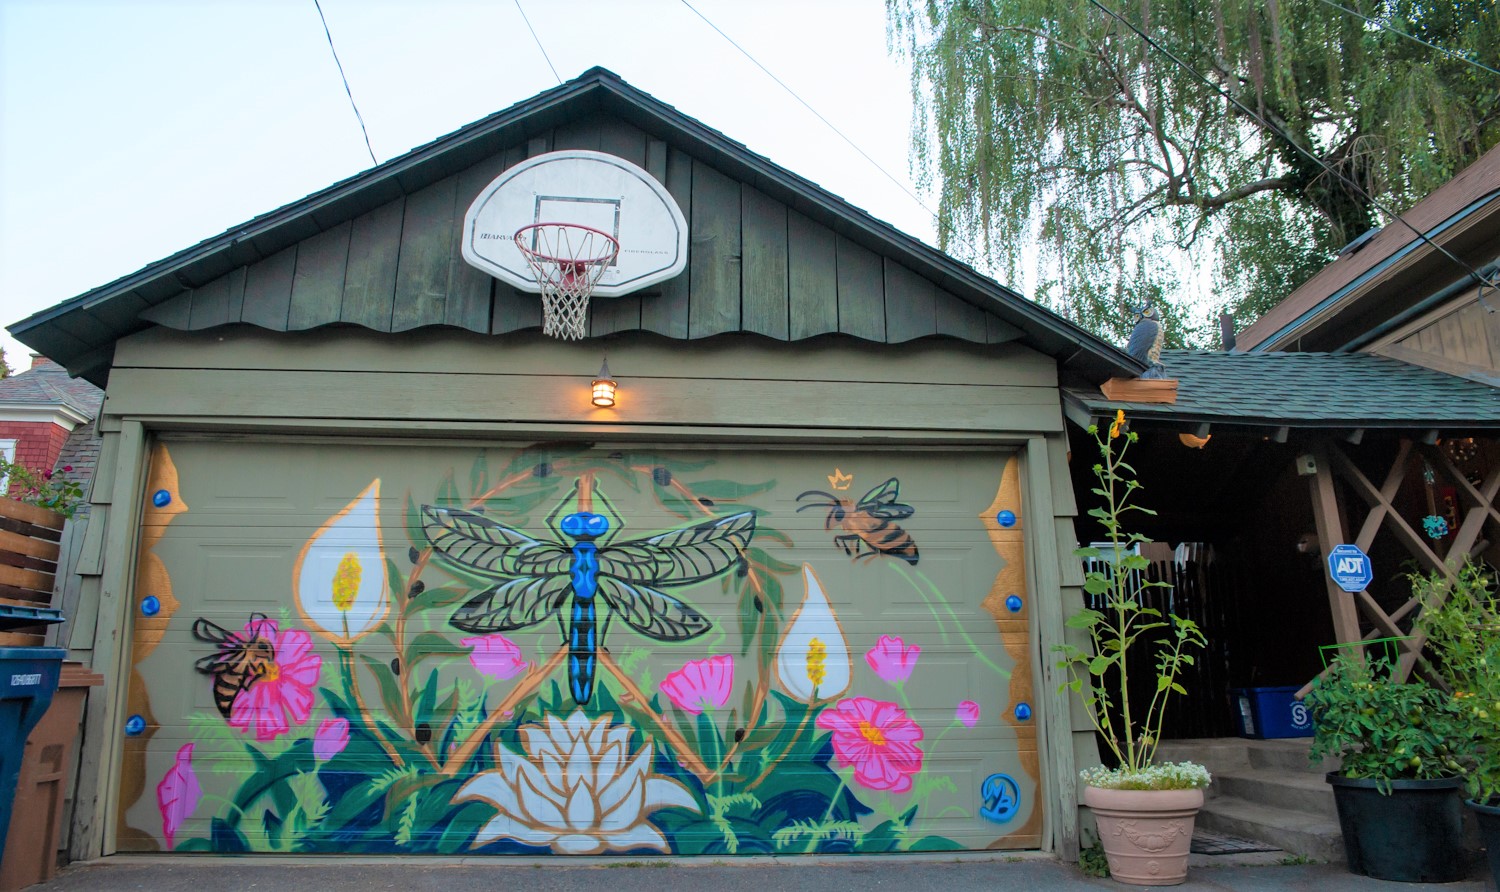 Flower mural art on a garage door.